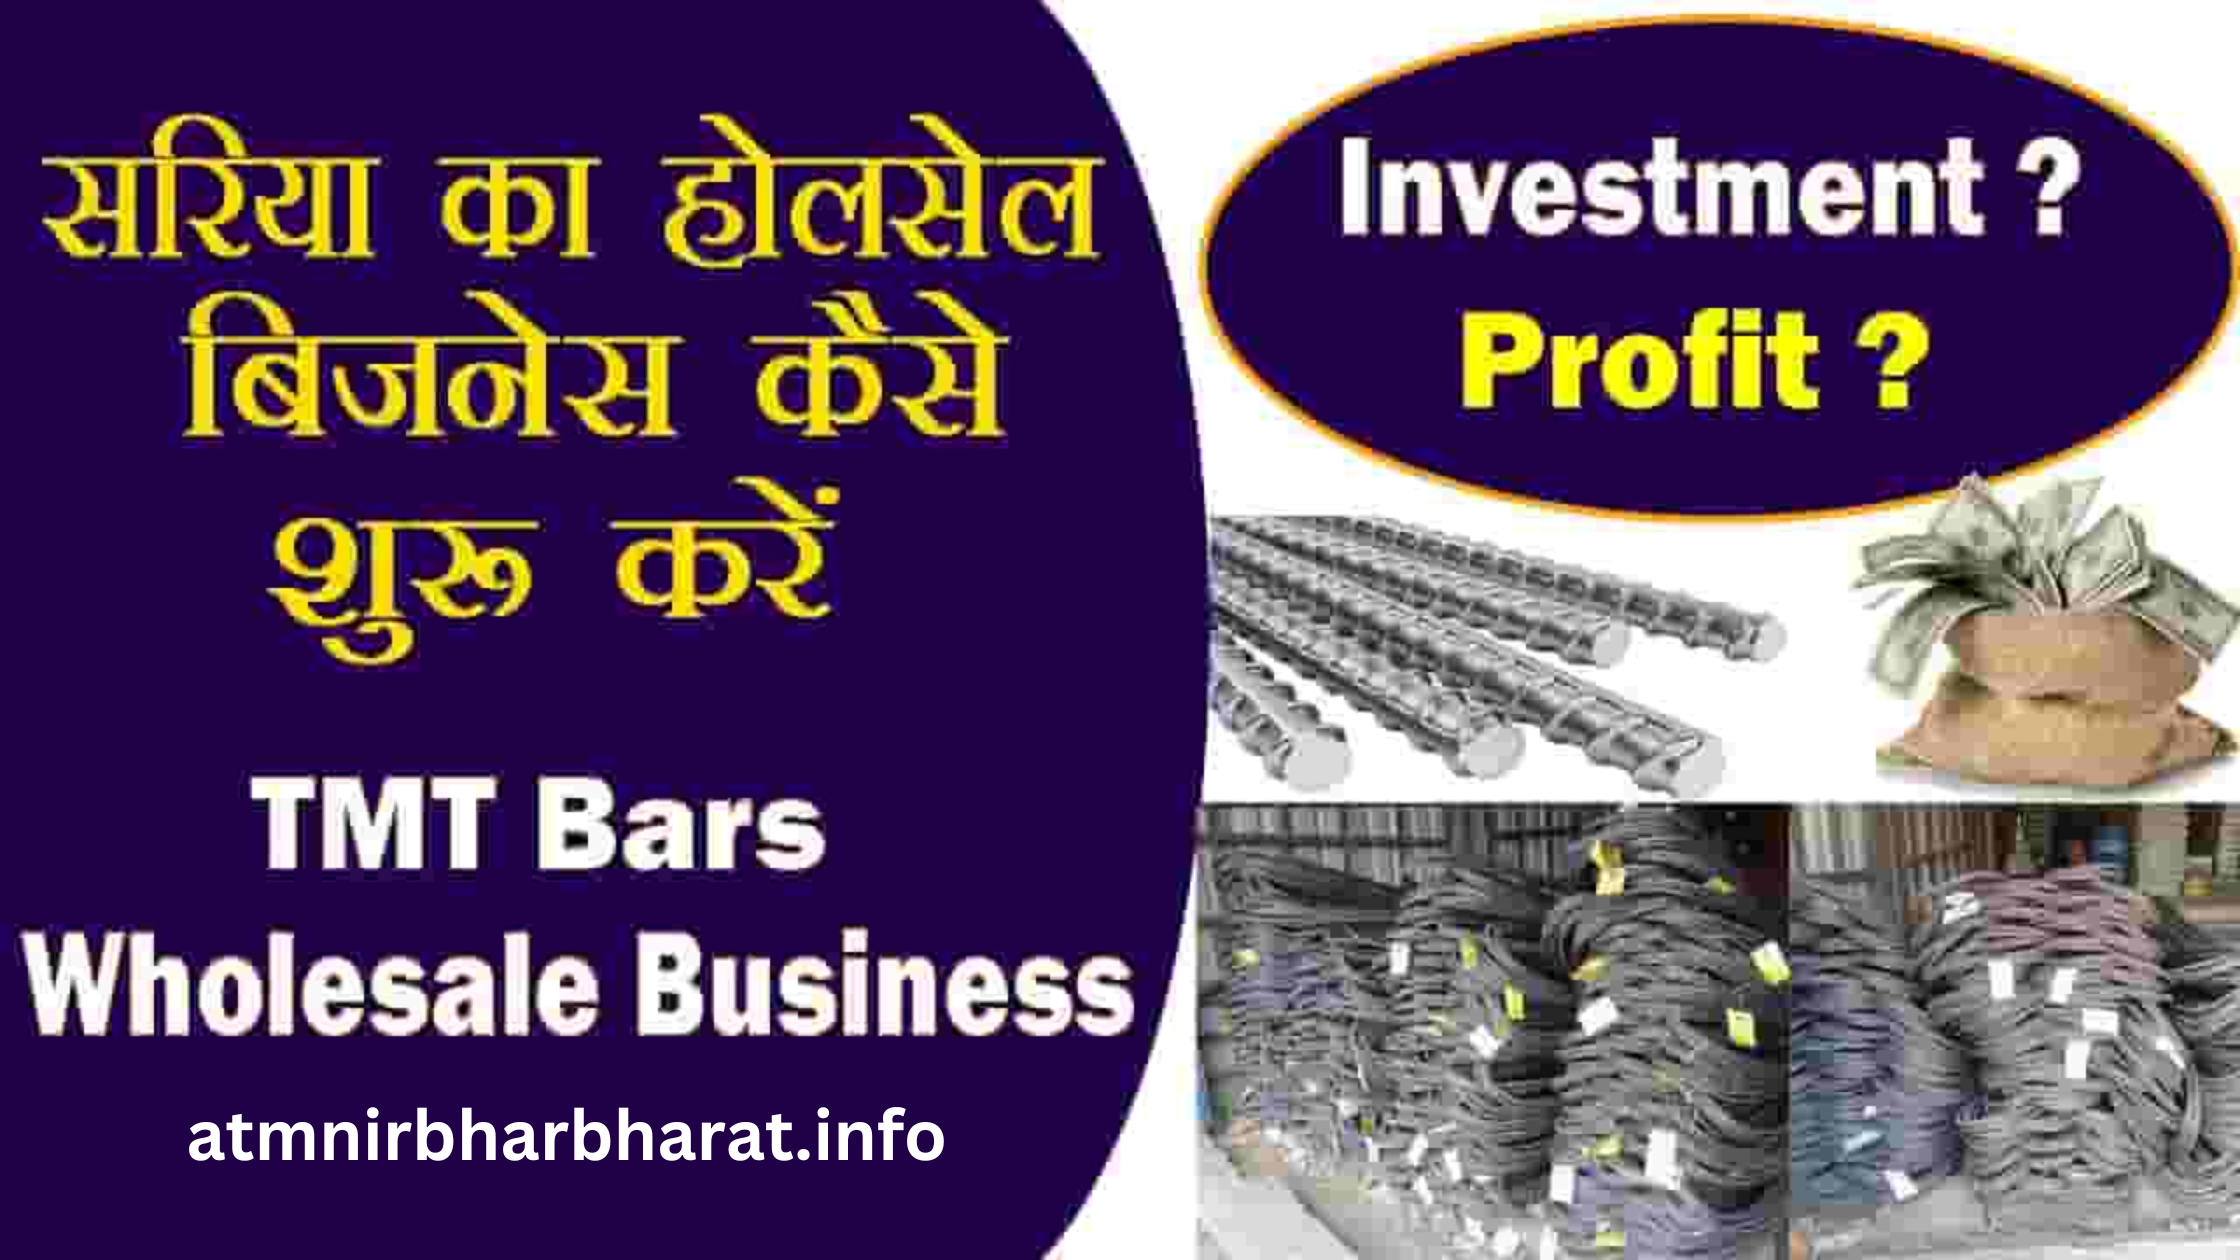 सरिया का होलसेल बिजनेस कैसे करे Sariye Ka Wholesale Business Hindi